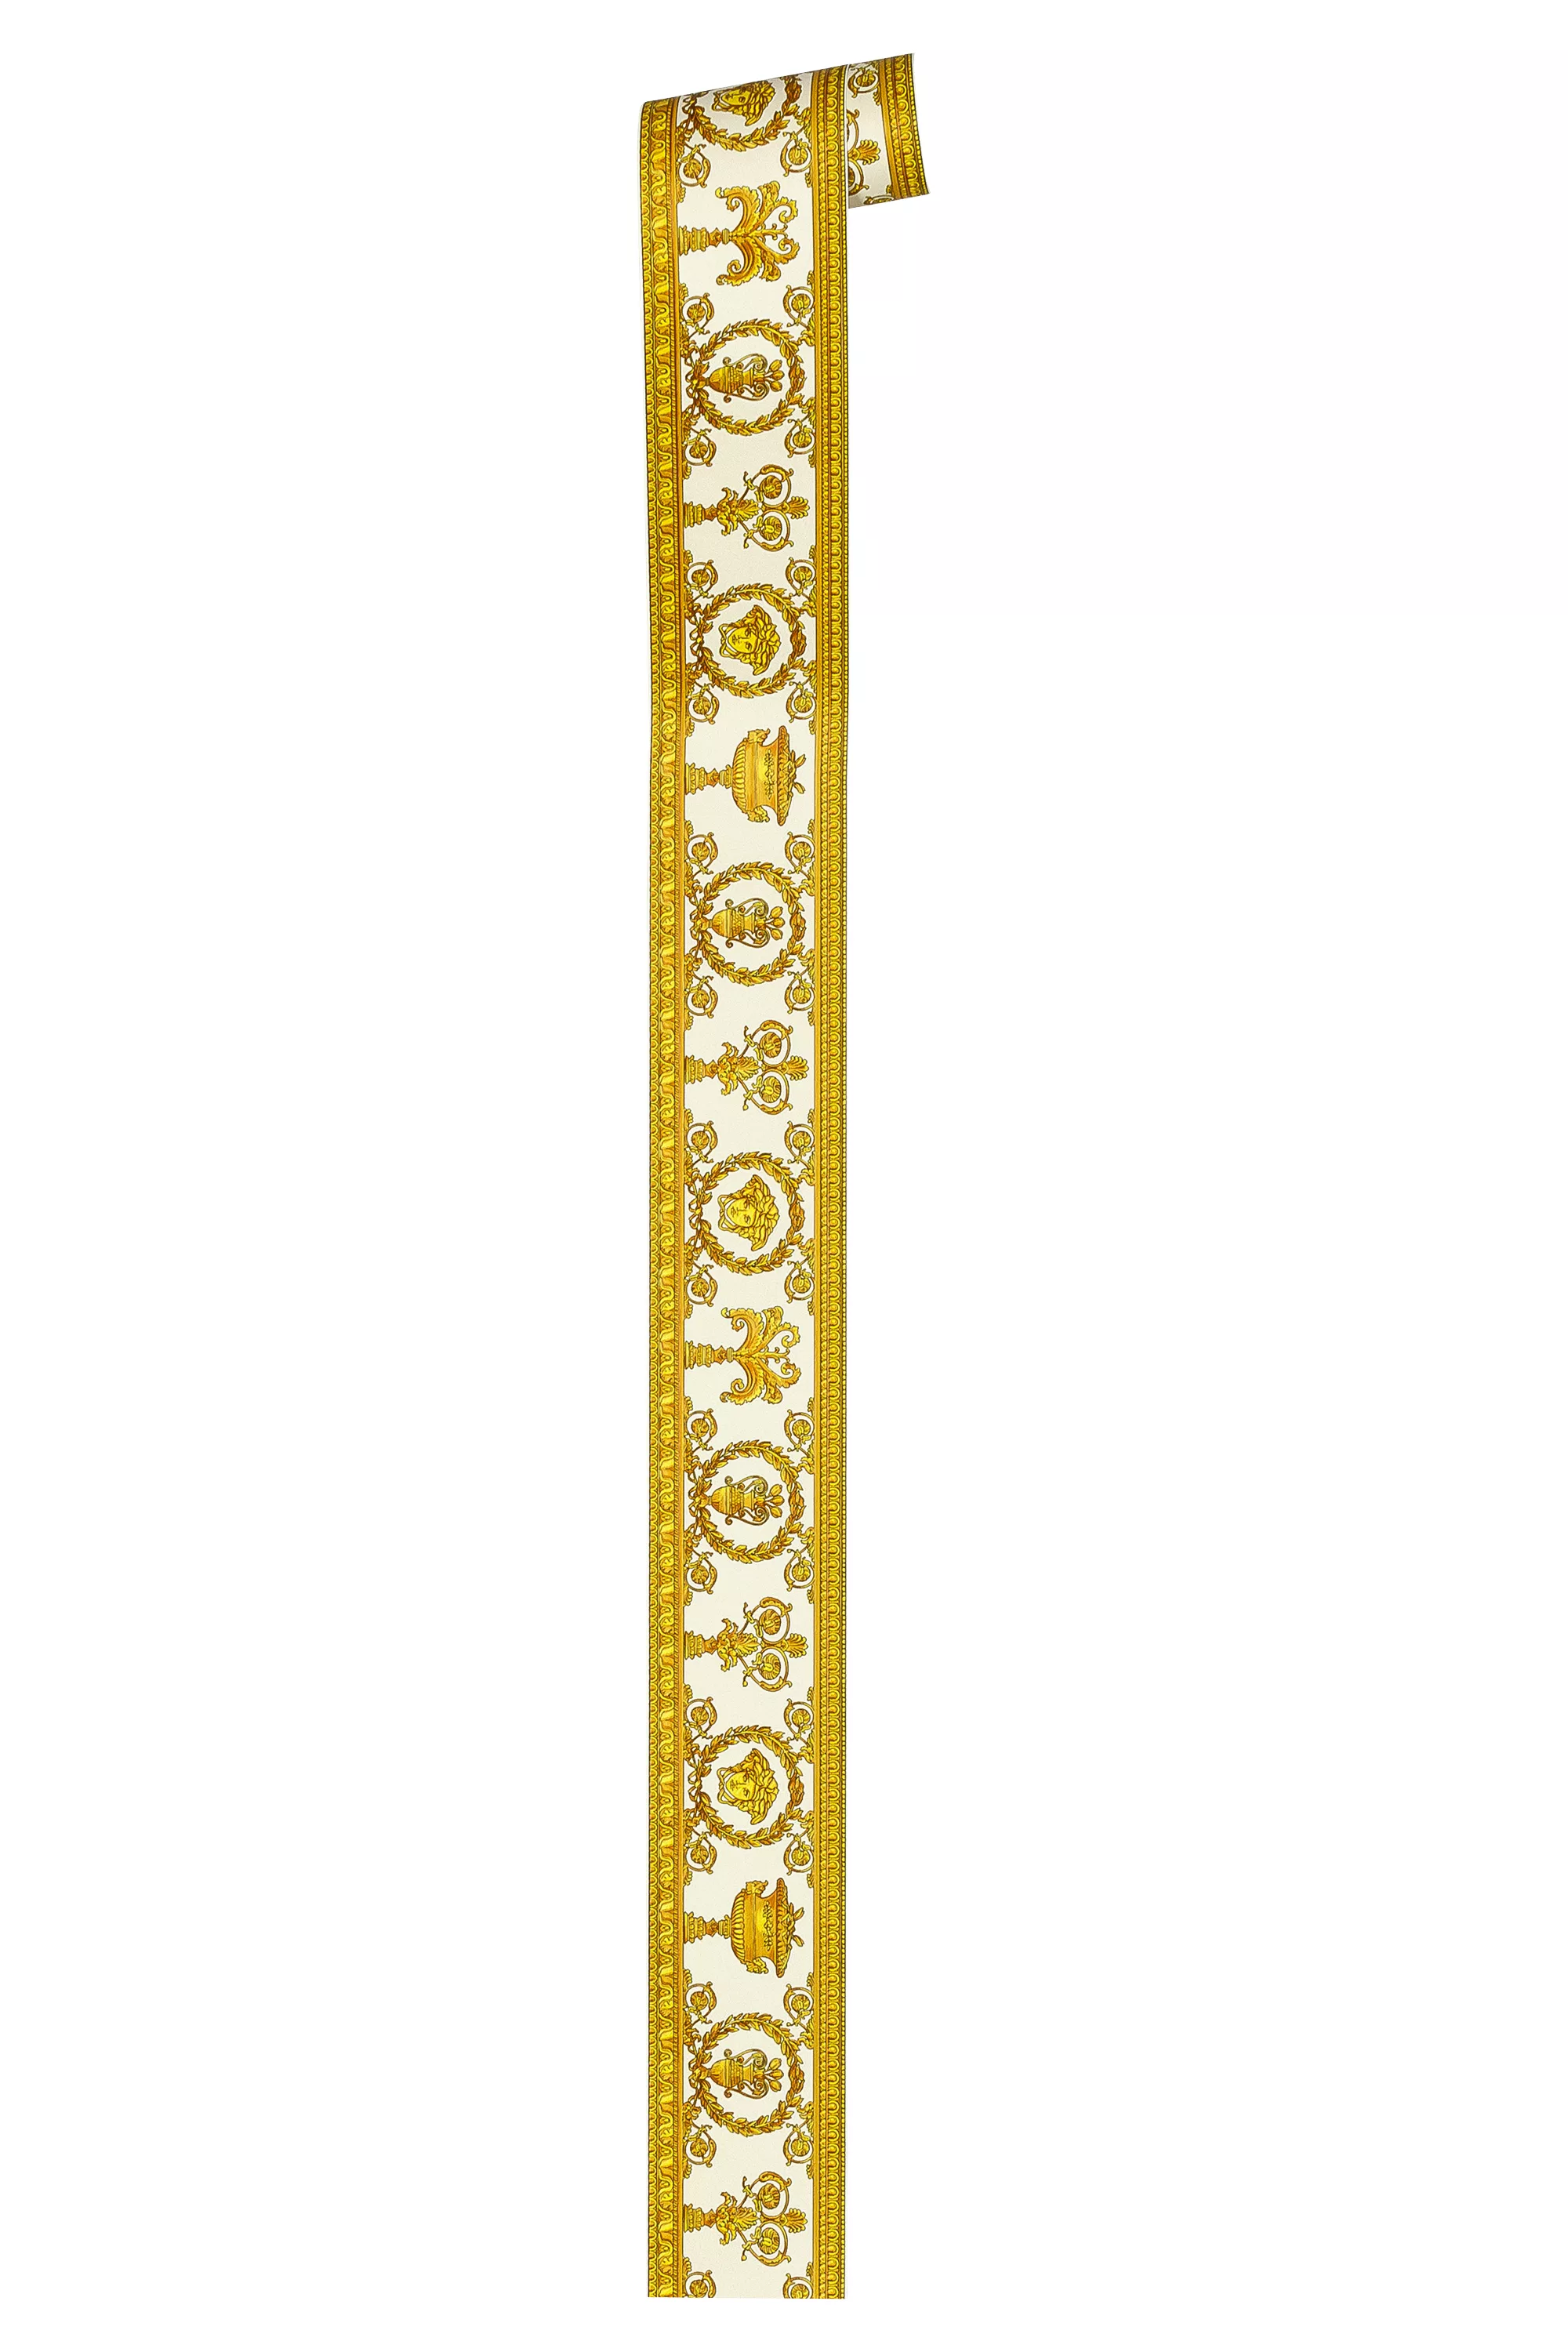 Bricoflor Barock Tapete als Bordüre inCreme und Gold Ornament Tapete mit Me günstig online kaufen